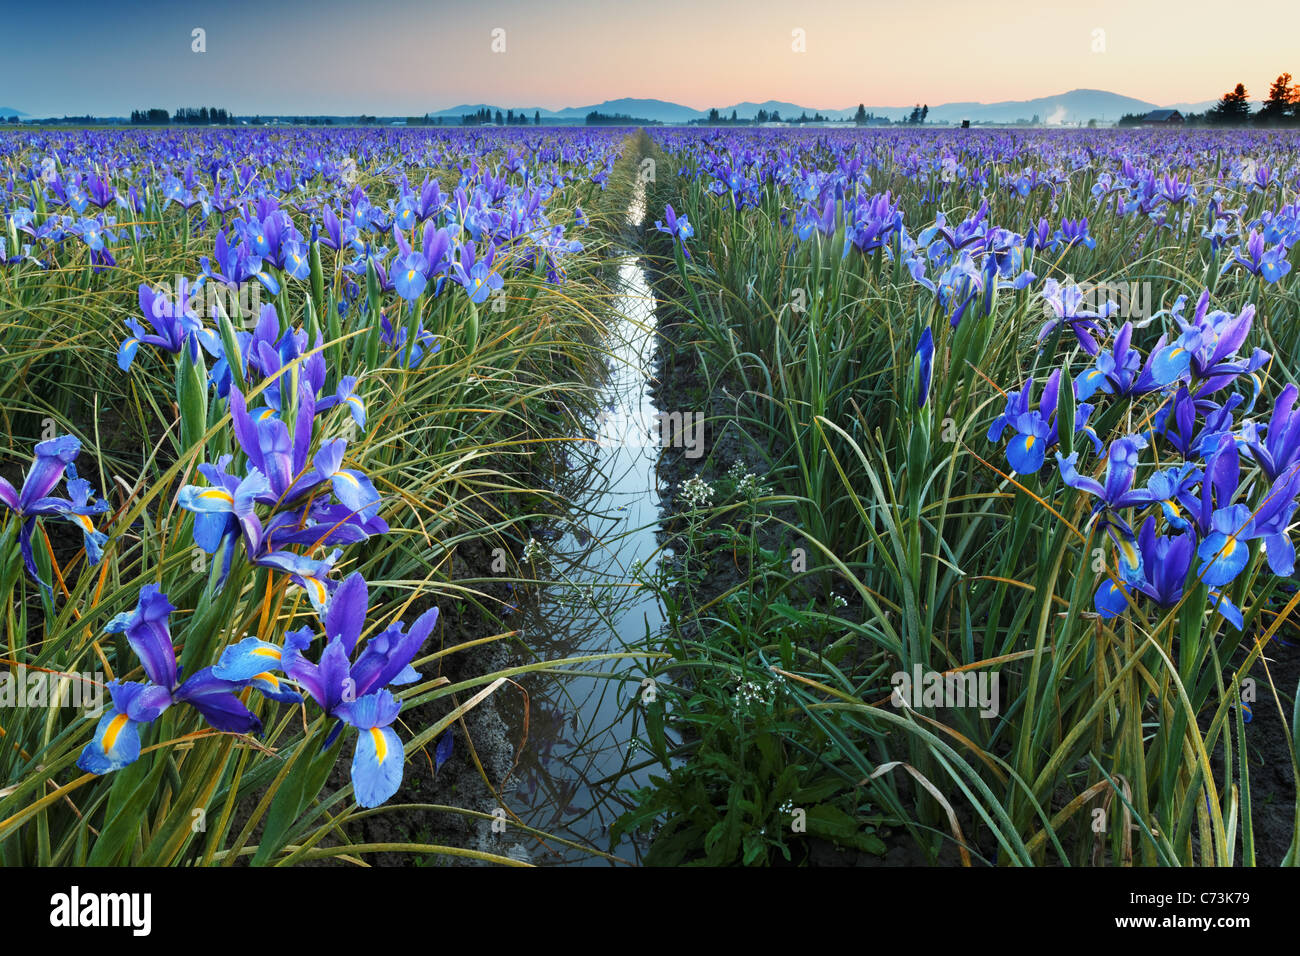 Field of blue iris, Skagit Valley, Mount Vernon, Washington Stock Photo